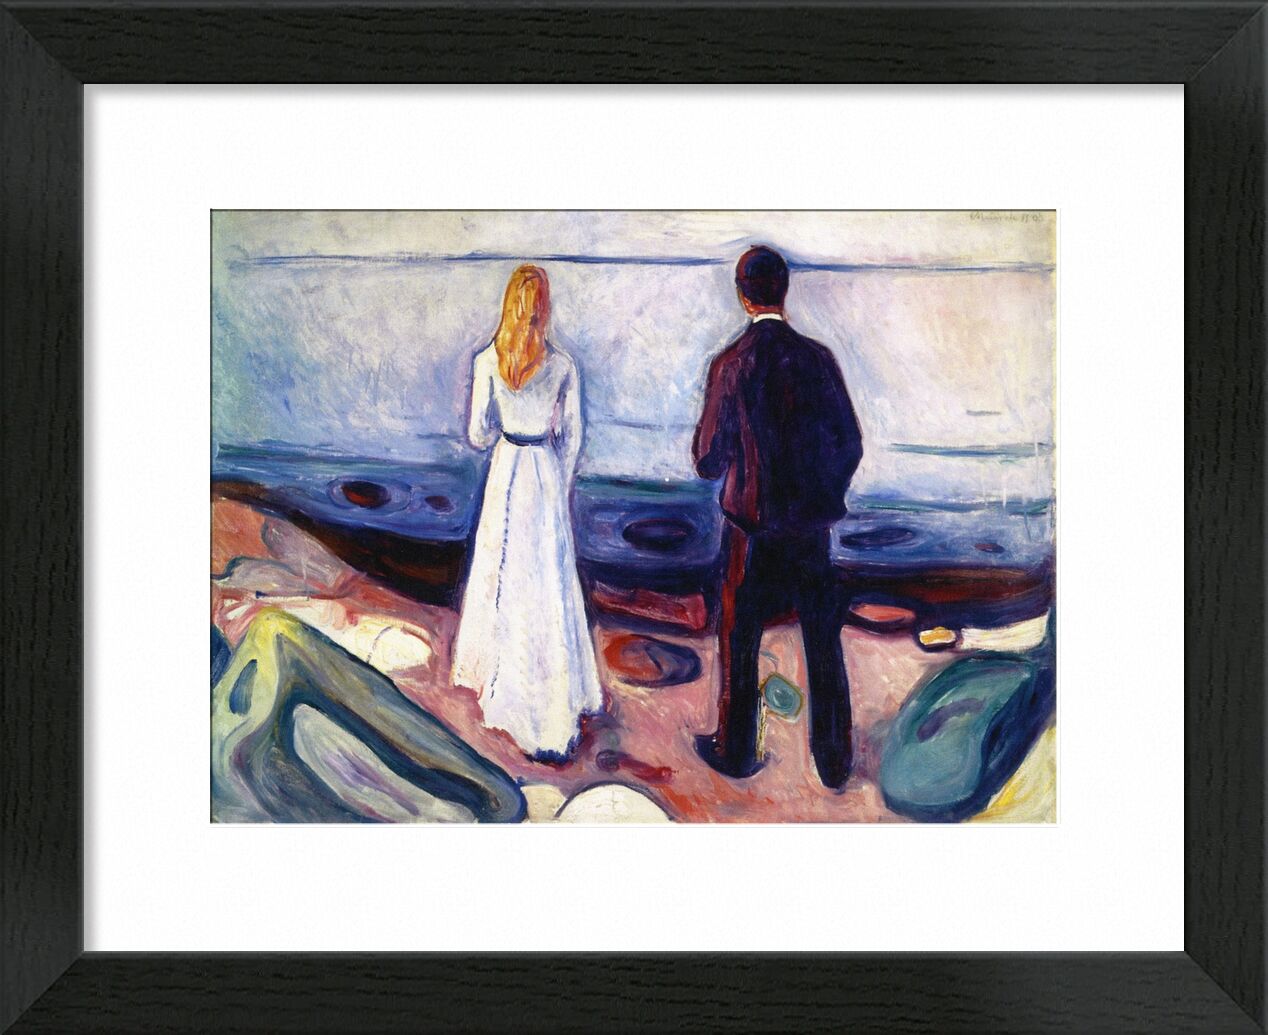 The Lonely Ones - Edvard Munch von Bildende Kunst, Prodi Art, Paar, Edvard Munch, mampfen, Meer, Frau, Mann